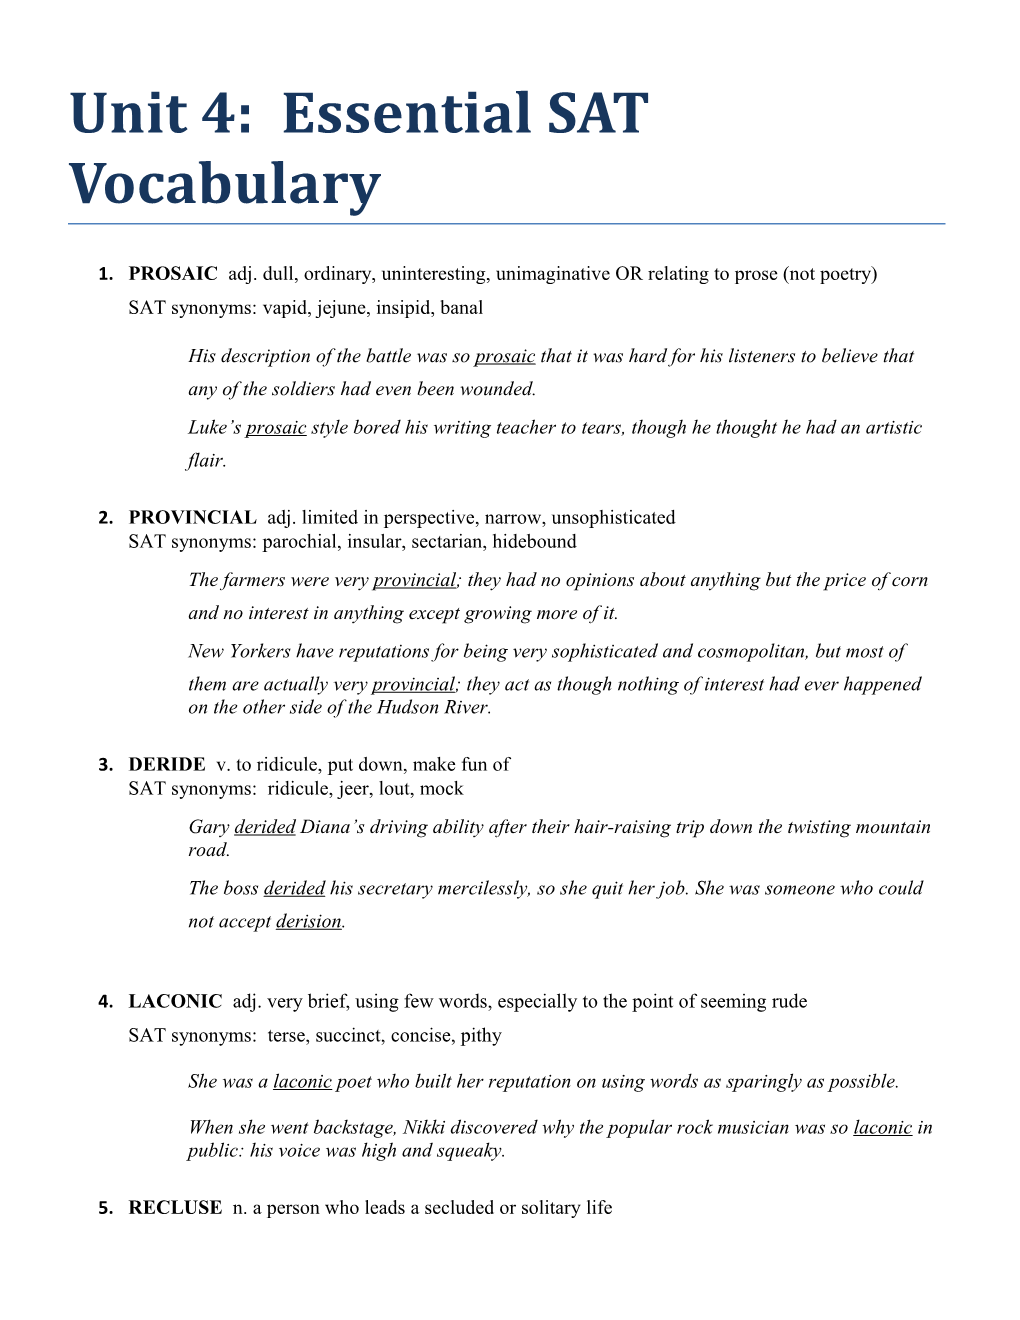 Unit 4: Essential SAT Vocabulary